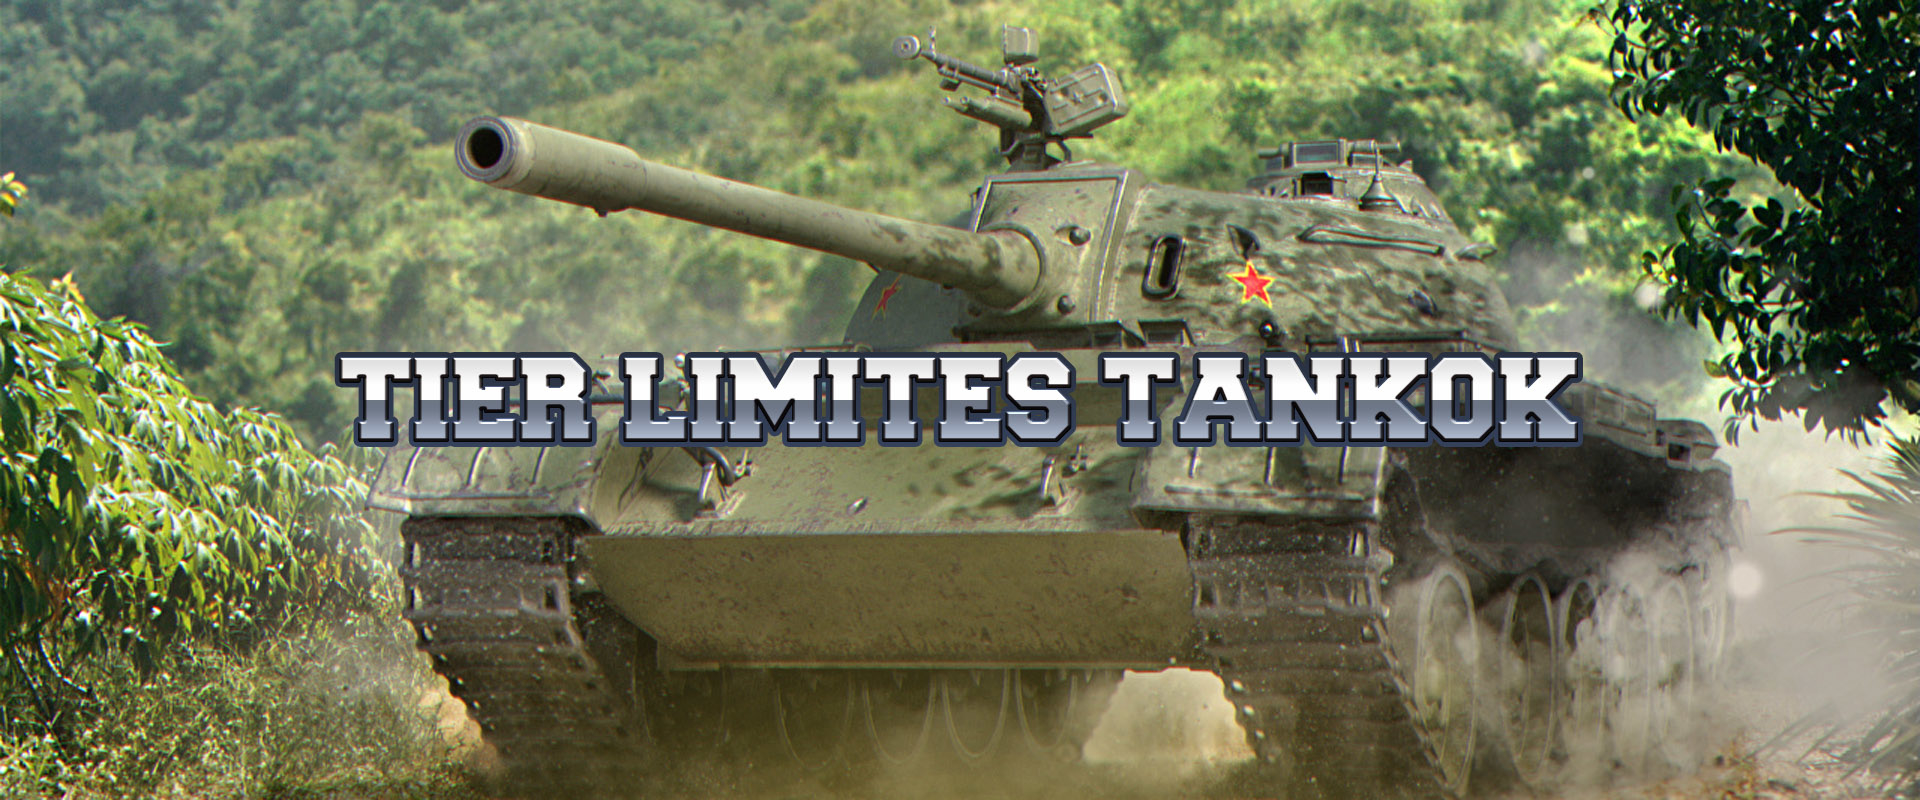 A tier limit marad, a tankok változnak!